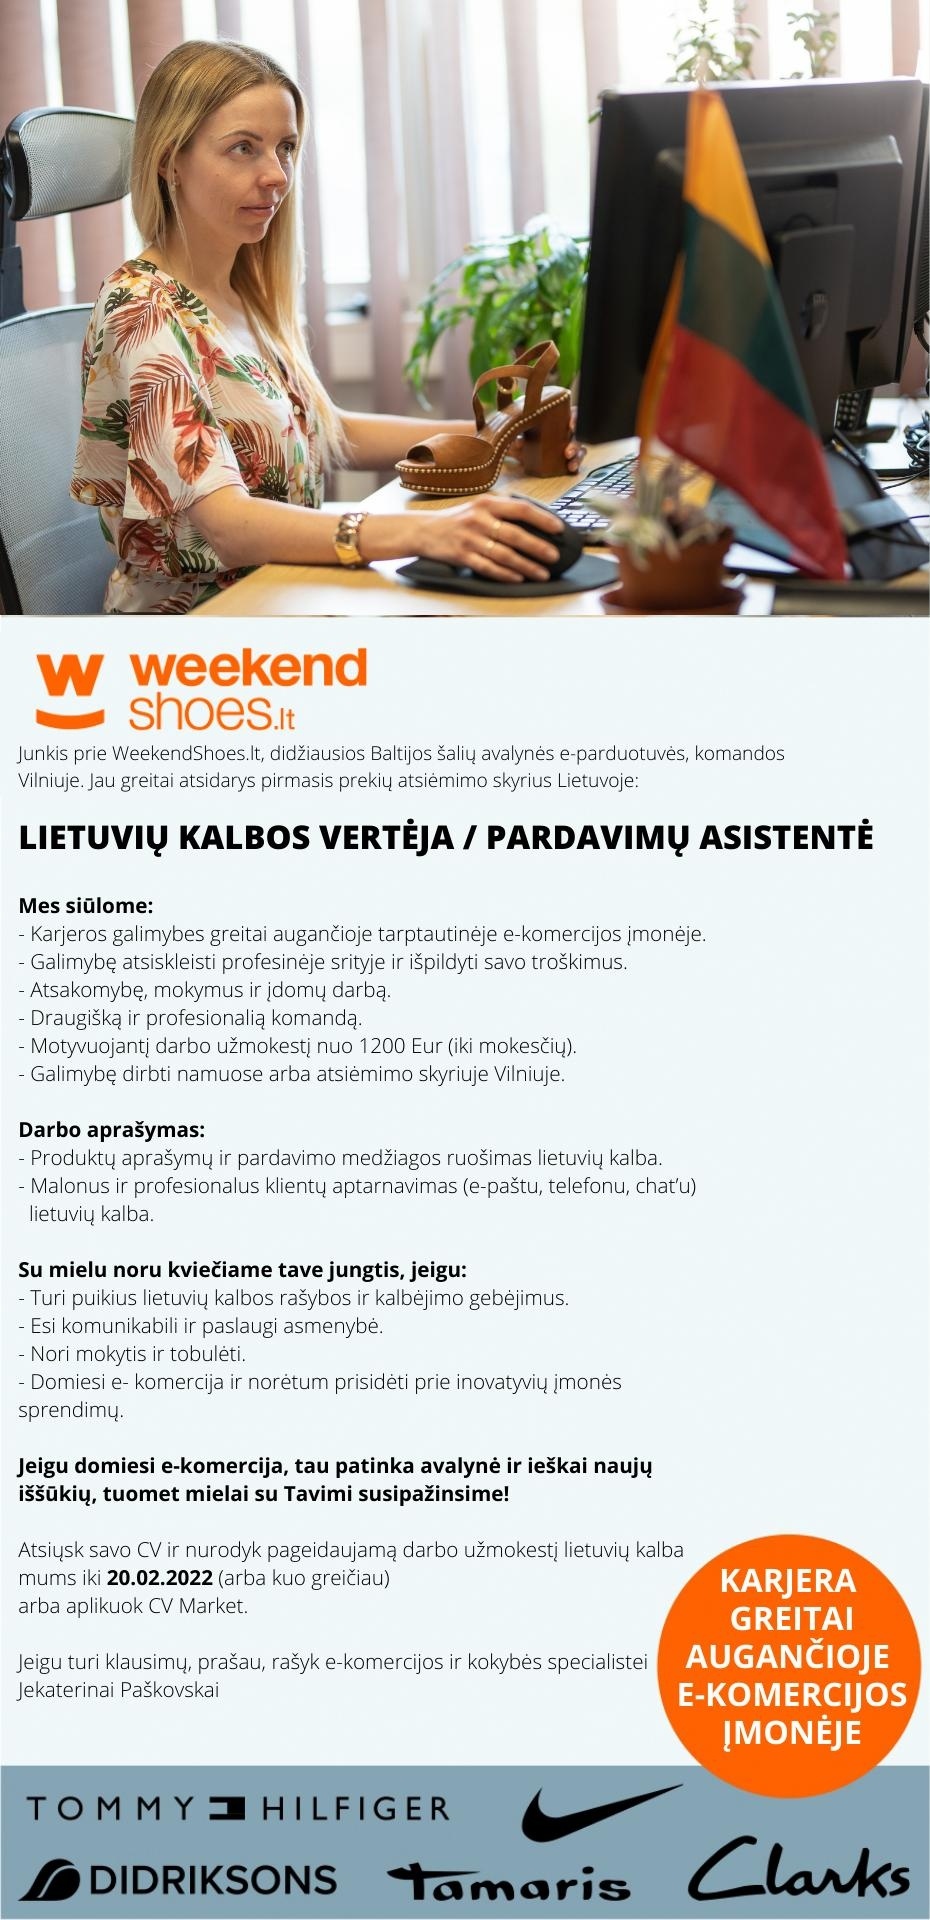 WeekendShoes.lt PARDAVIMO / VERTIMŲ ASISTENTĖ (TAS) LIETUVOS RINKAI - karjeros ir tobulėjimo galimybės